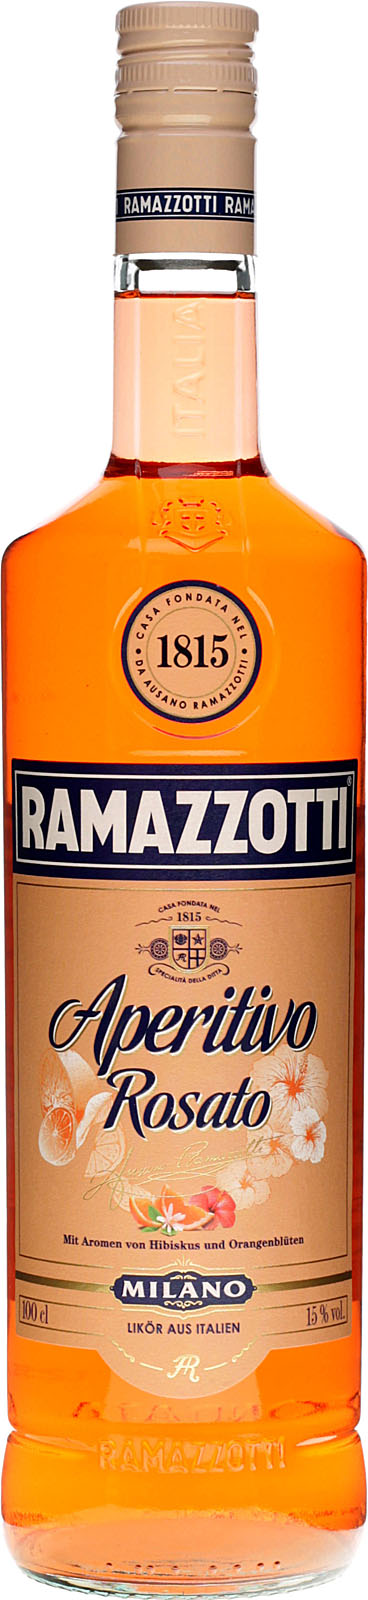 Ramazzotti Liter Rosato bei 1 uns kau Aperitivo günstig